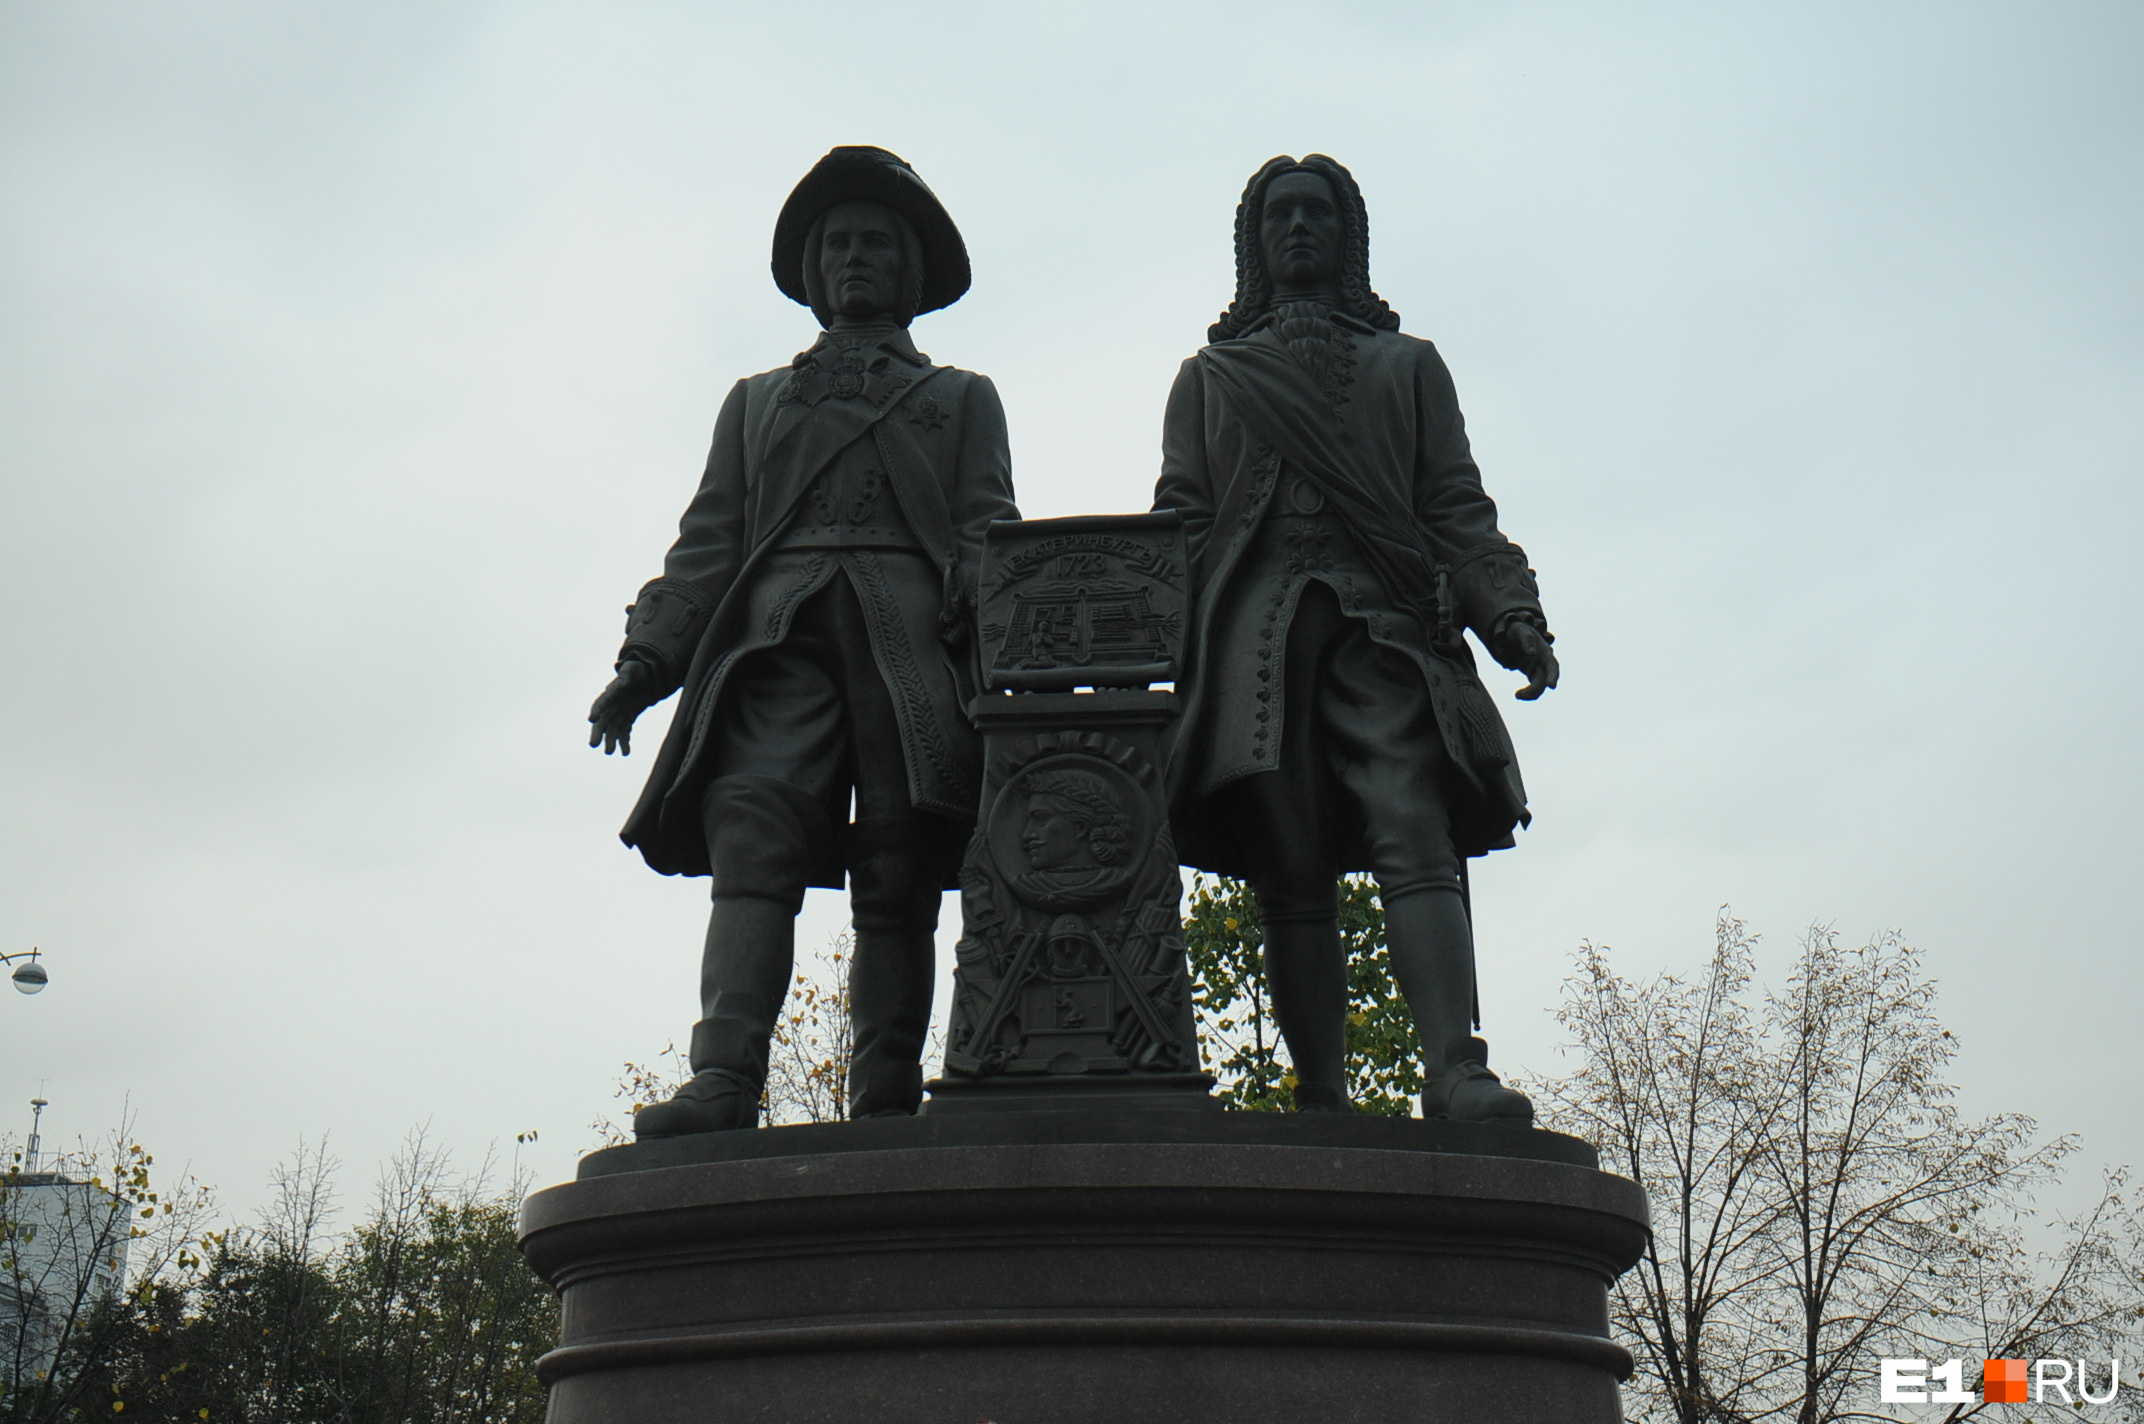 Памятник Татищеву и де Геннину был открыт в честь 275-летия Екатеринбурга